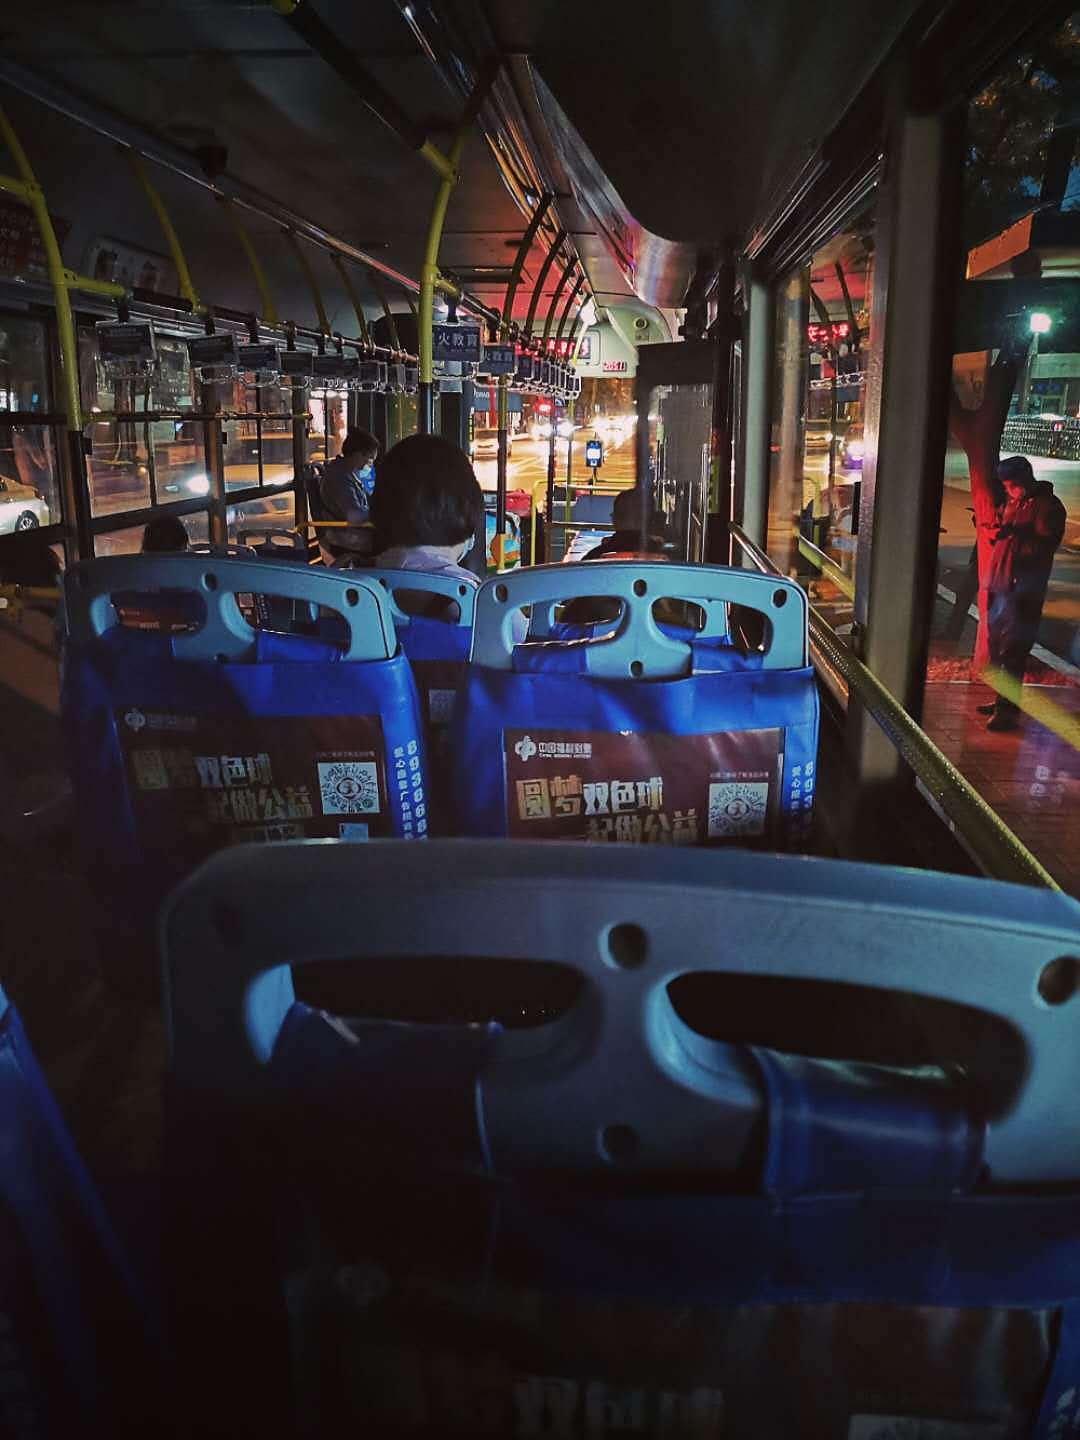 公交车内部照片晚上图片